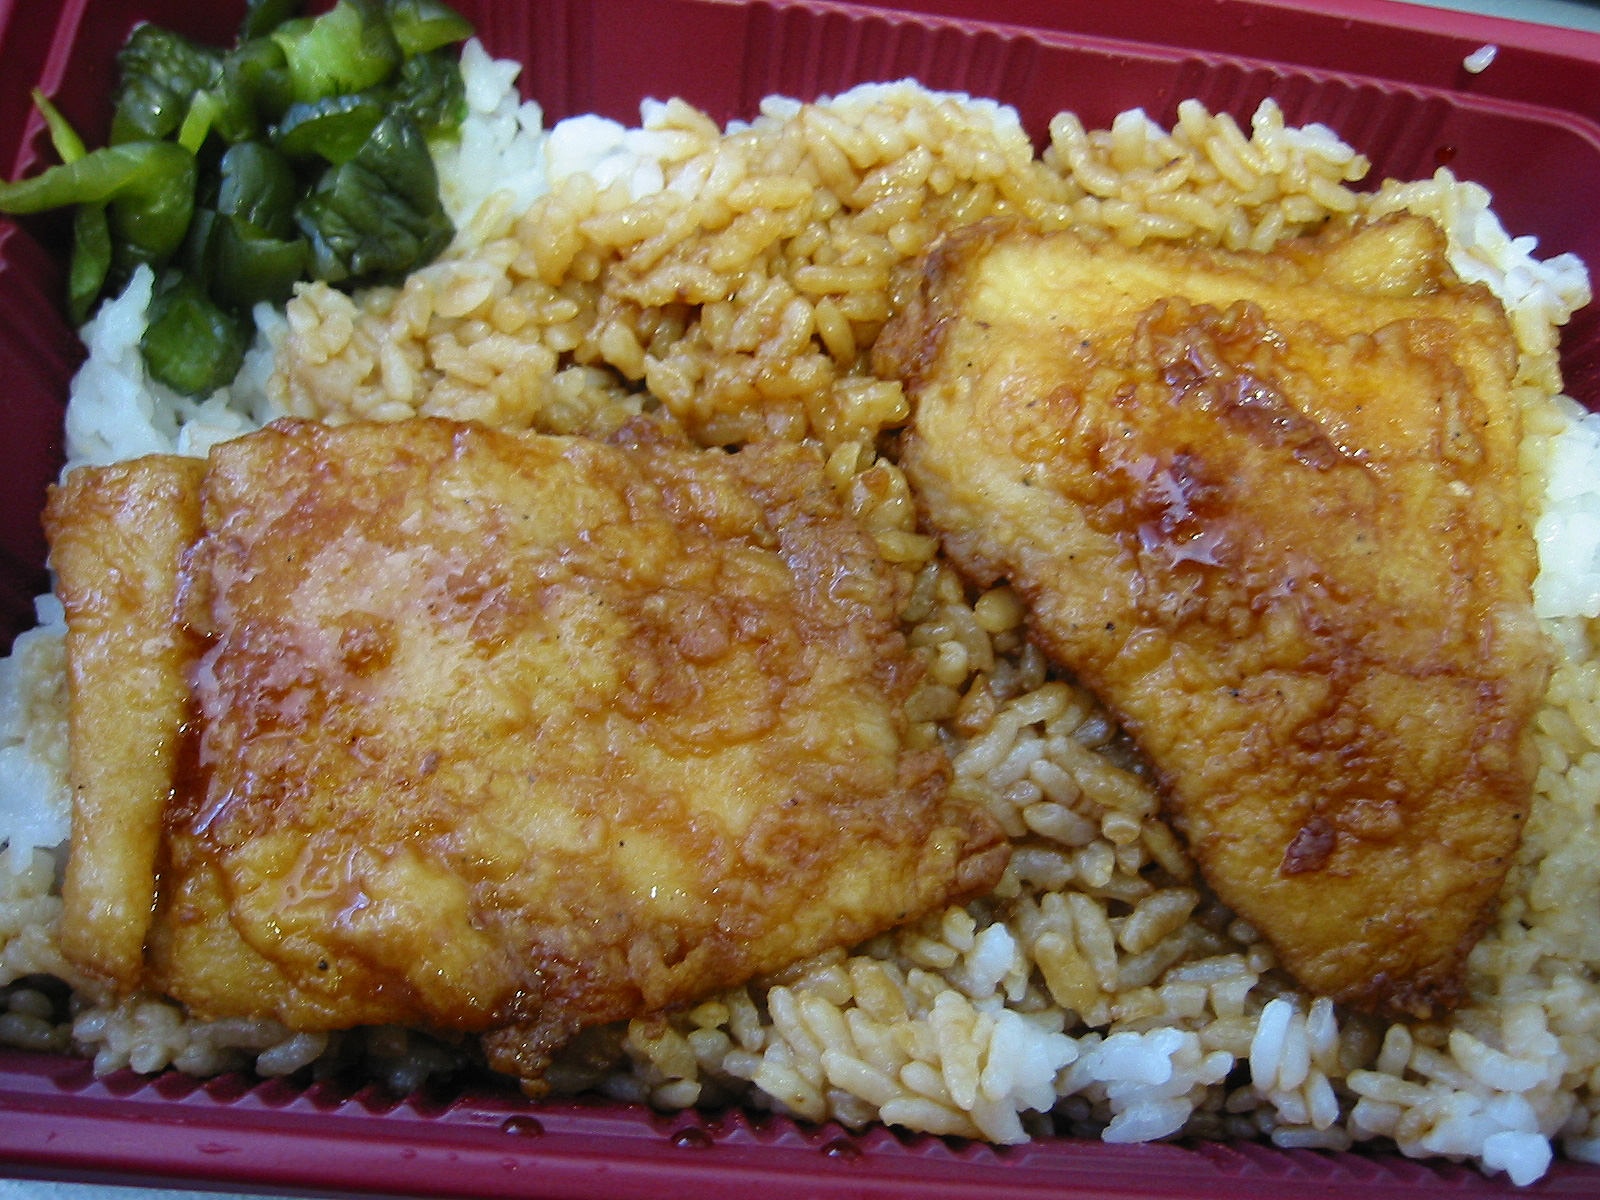 Teriyaki fish, rice and pickles